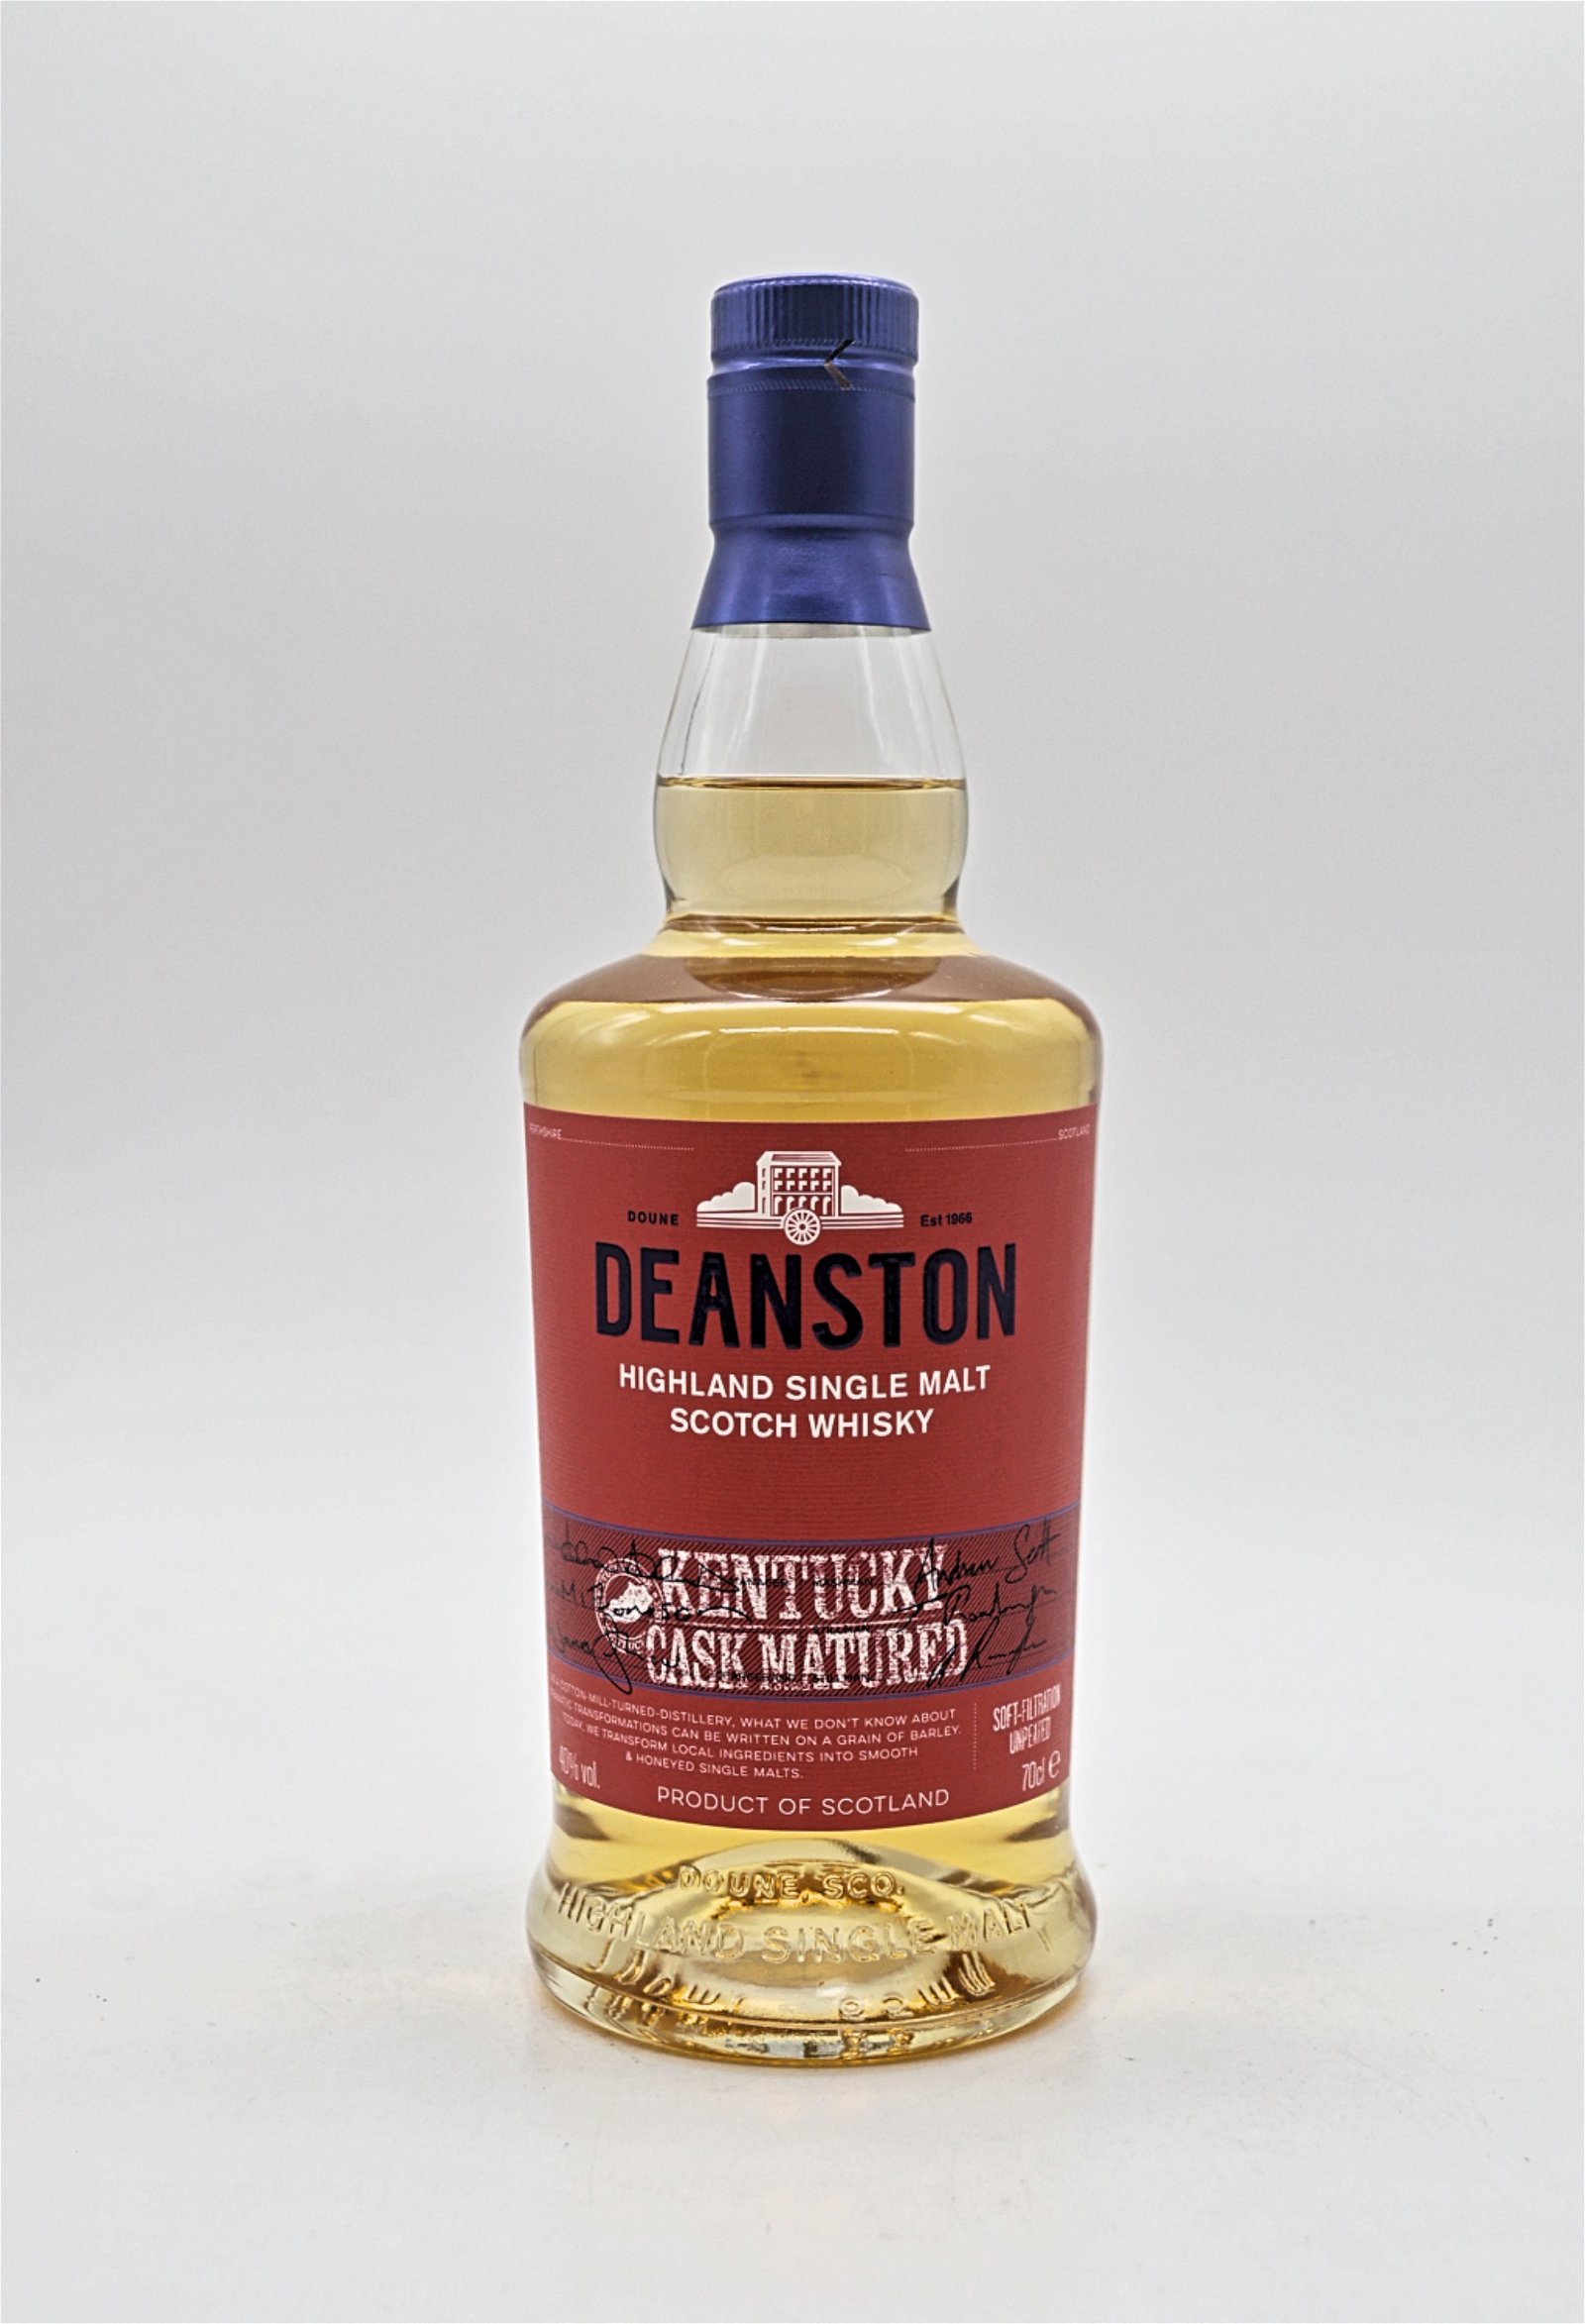 Deanston Kentucky Cask Matured Highland Single Malt Scotch Whisky